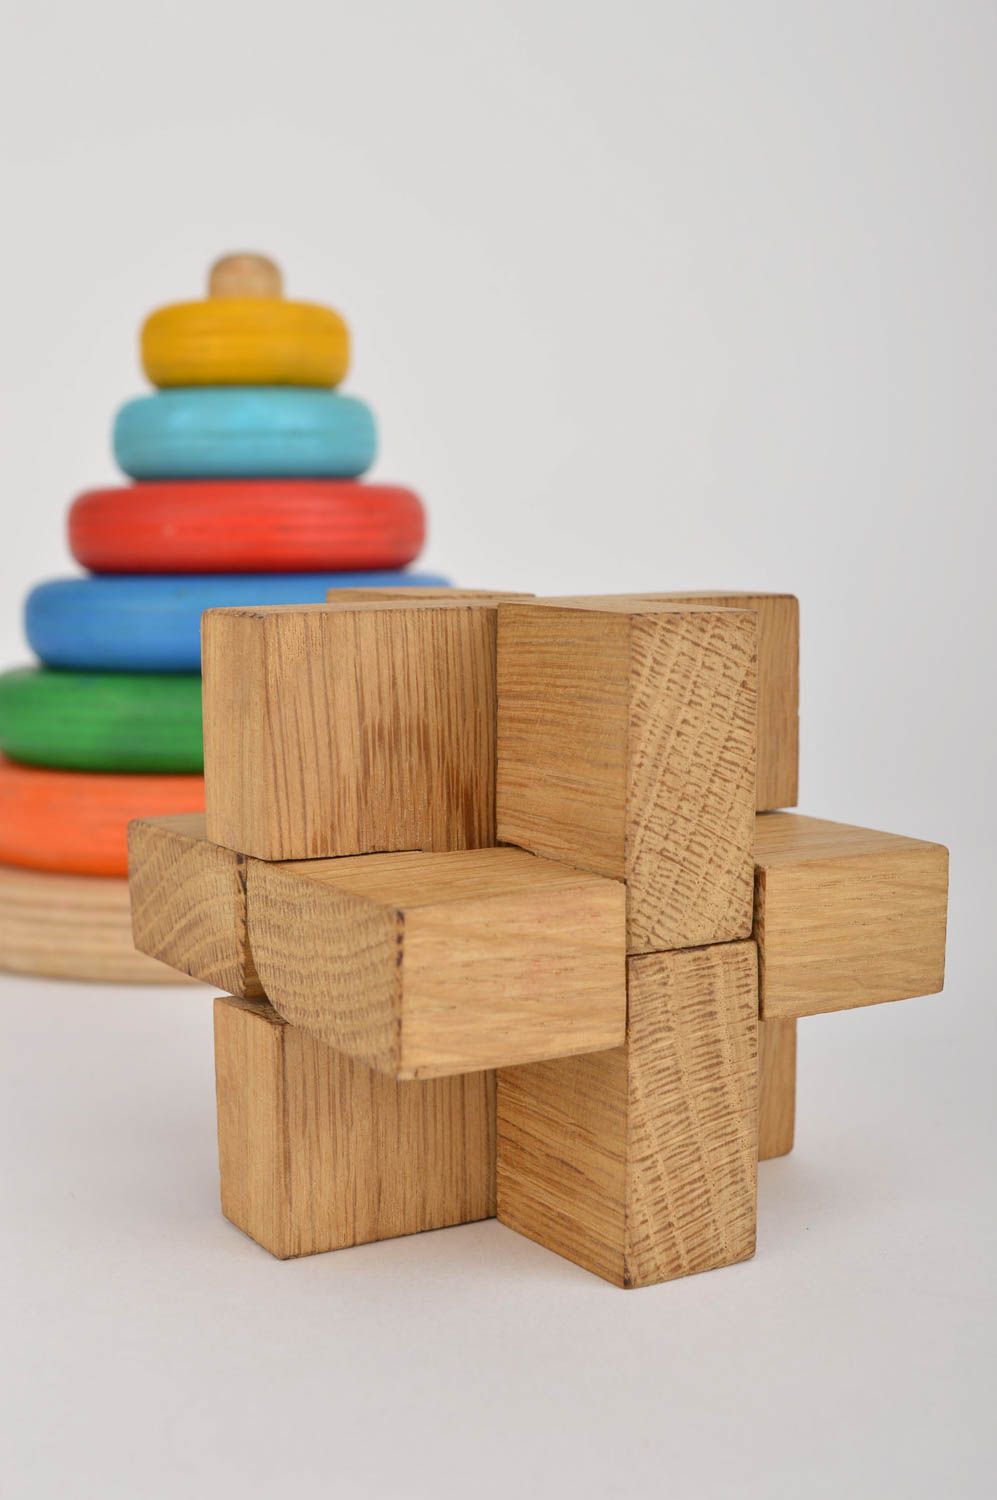 Игрушка ручной работы деревянный кубик игрушка из дерева от 3 лет из дуба фото 1